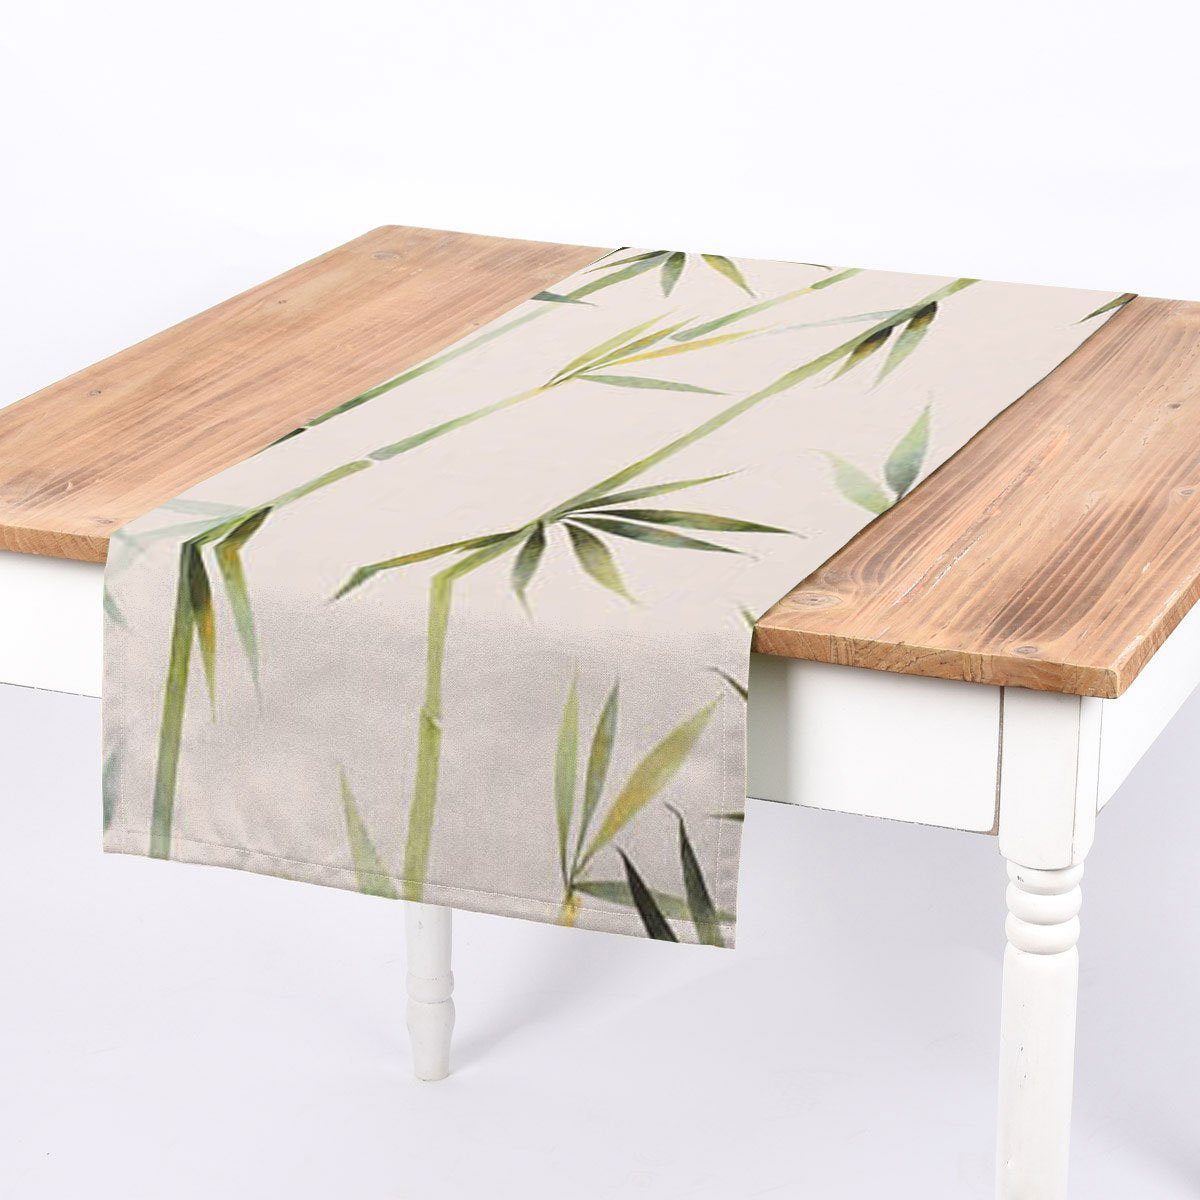 SCHÖNER LEBEN. Tischläufer SCHÖNER LEBEN. Tischläufer Pacific Bambus dunkel-beige grün 40x160cm, handmade